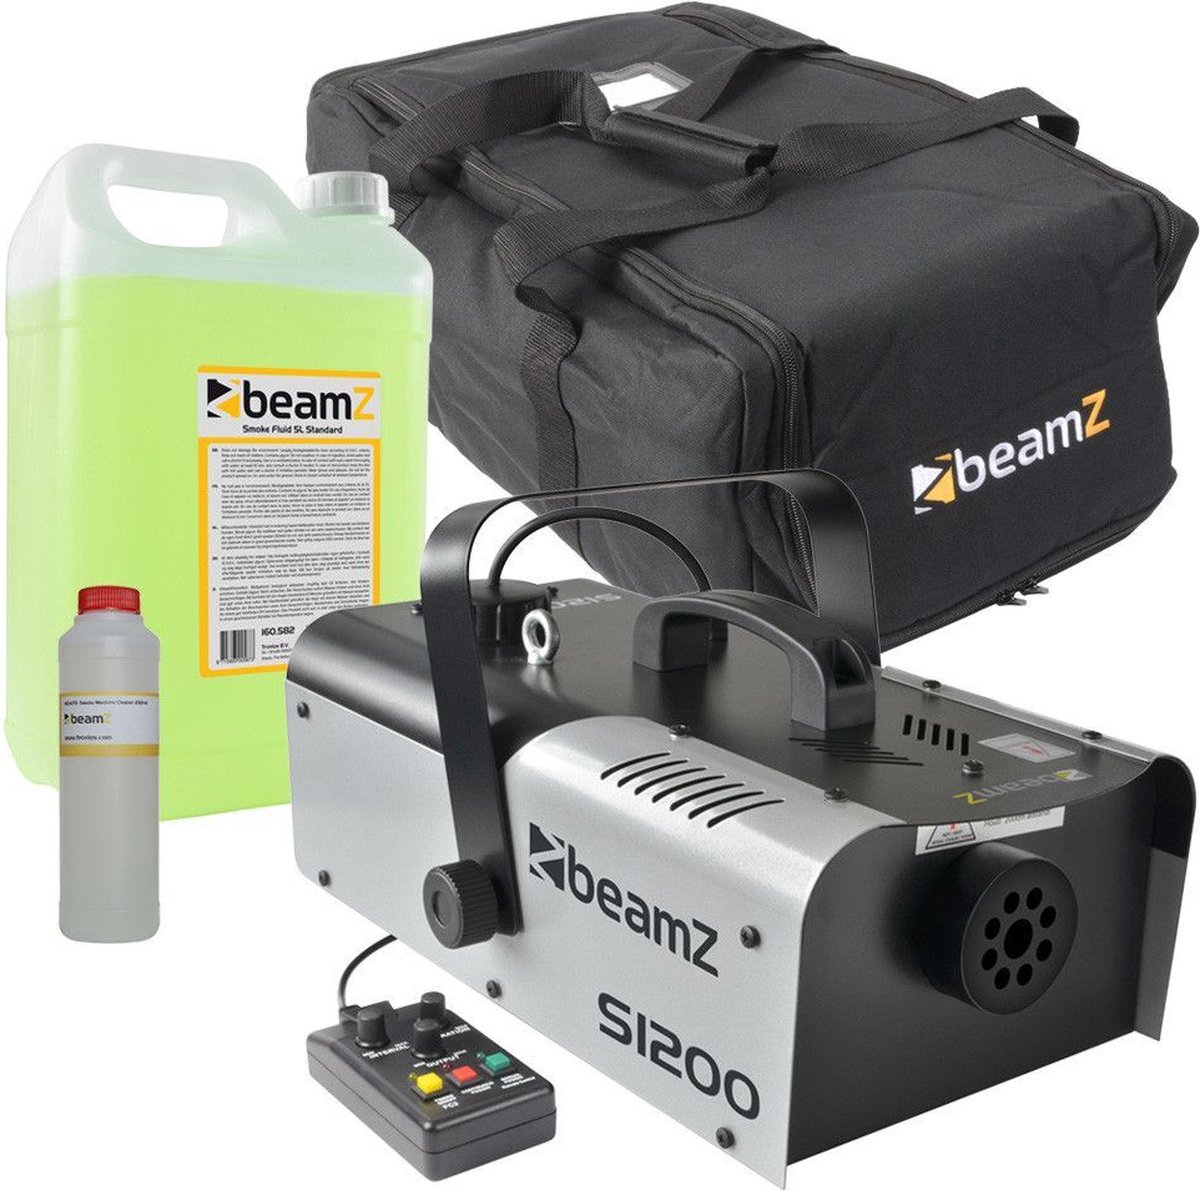 Rookmachine met rookvloeistof - BeamZ S1200 rookmachine met tas, 5 liter rookvloeistof en reinigingsvloeistof - BeamZ